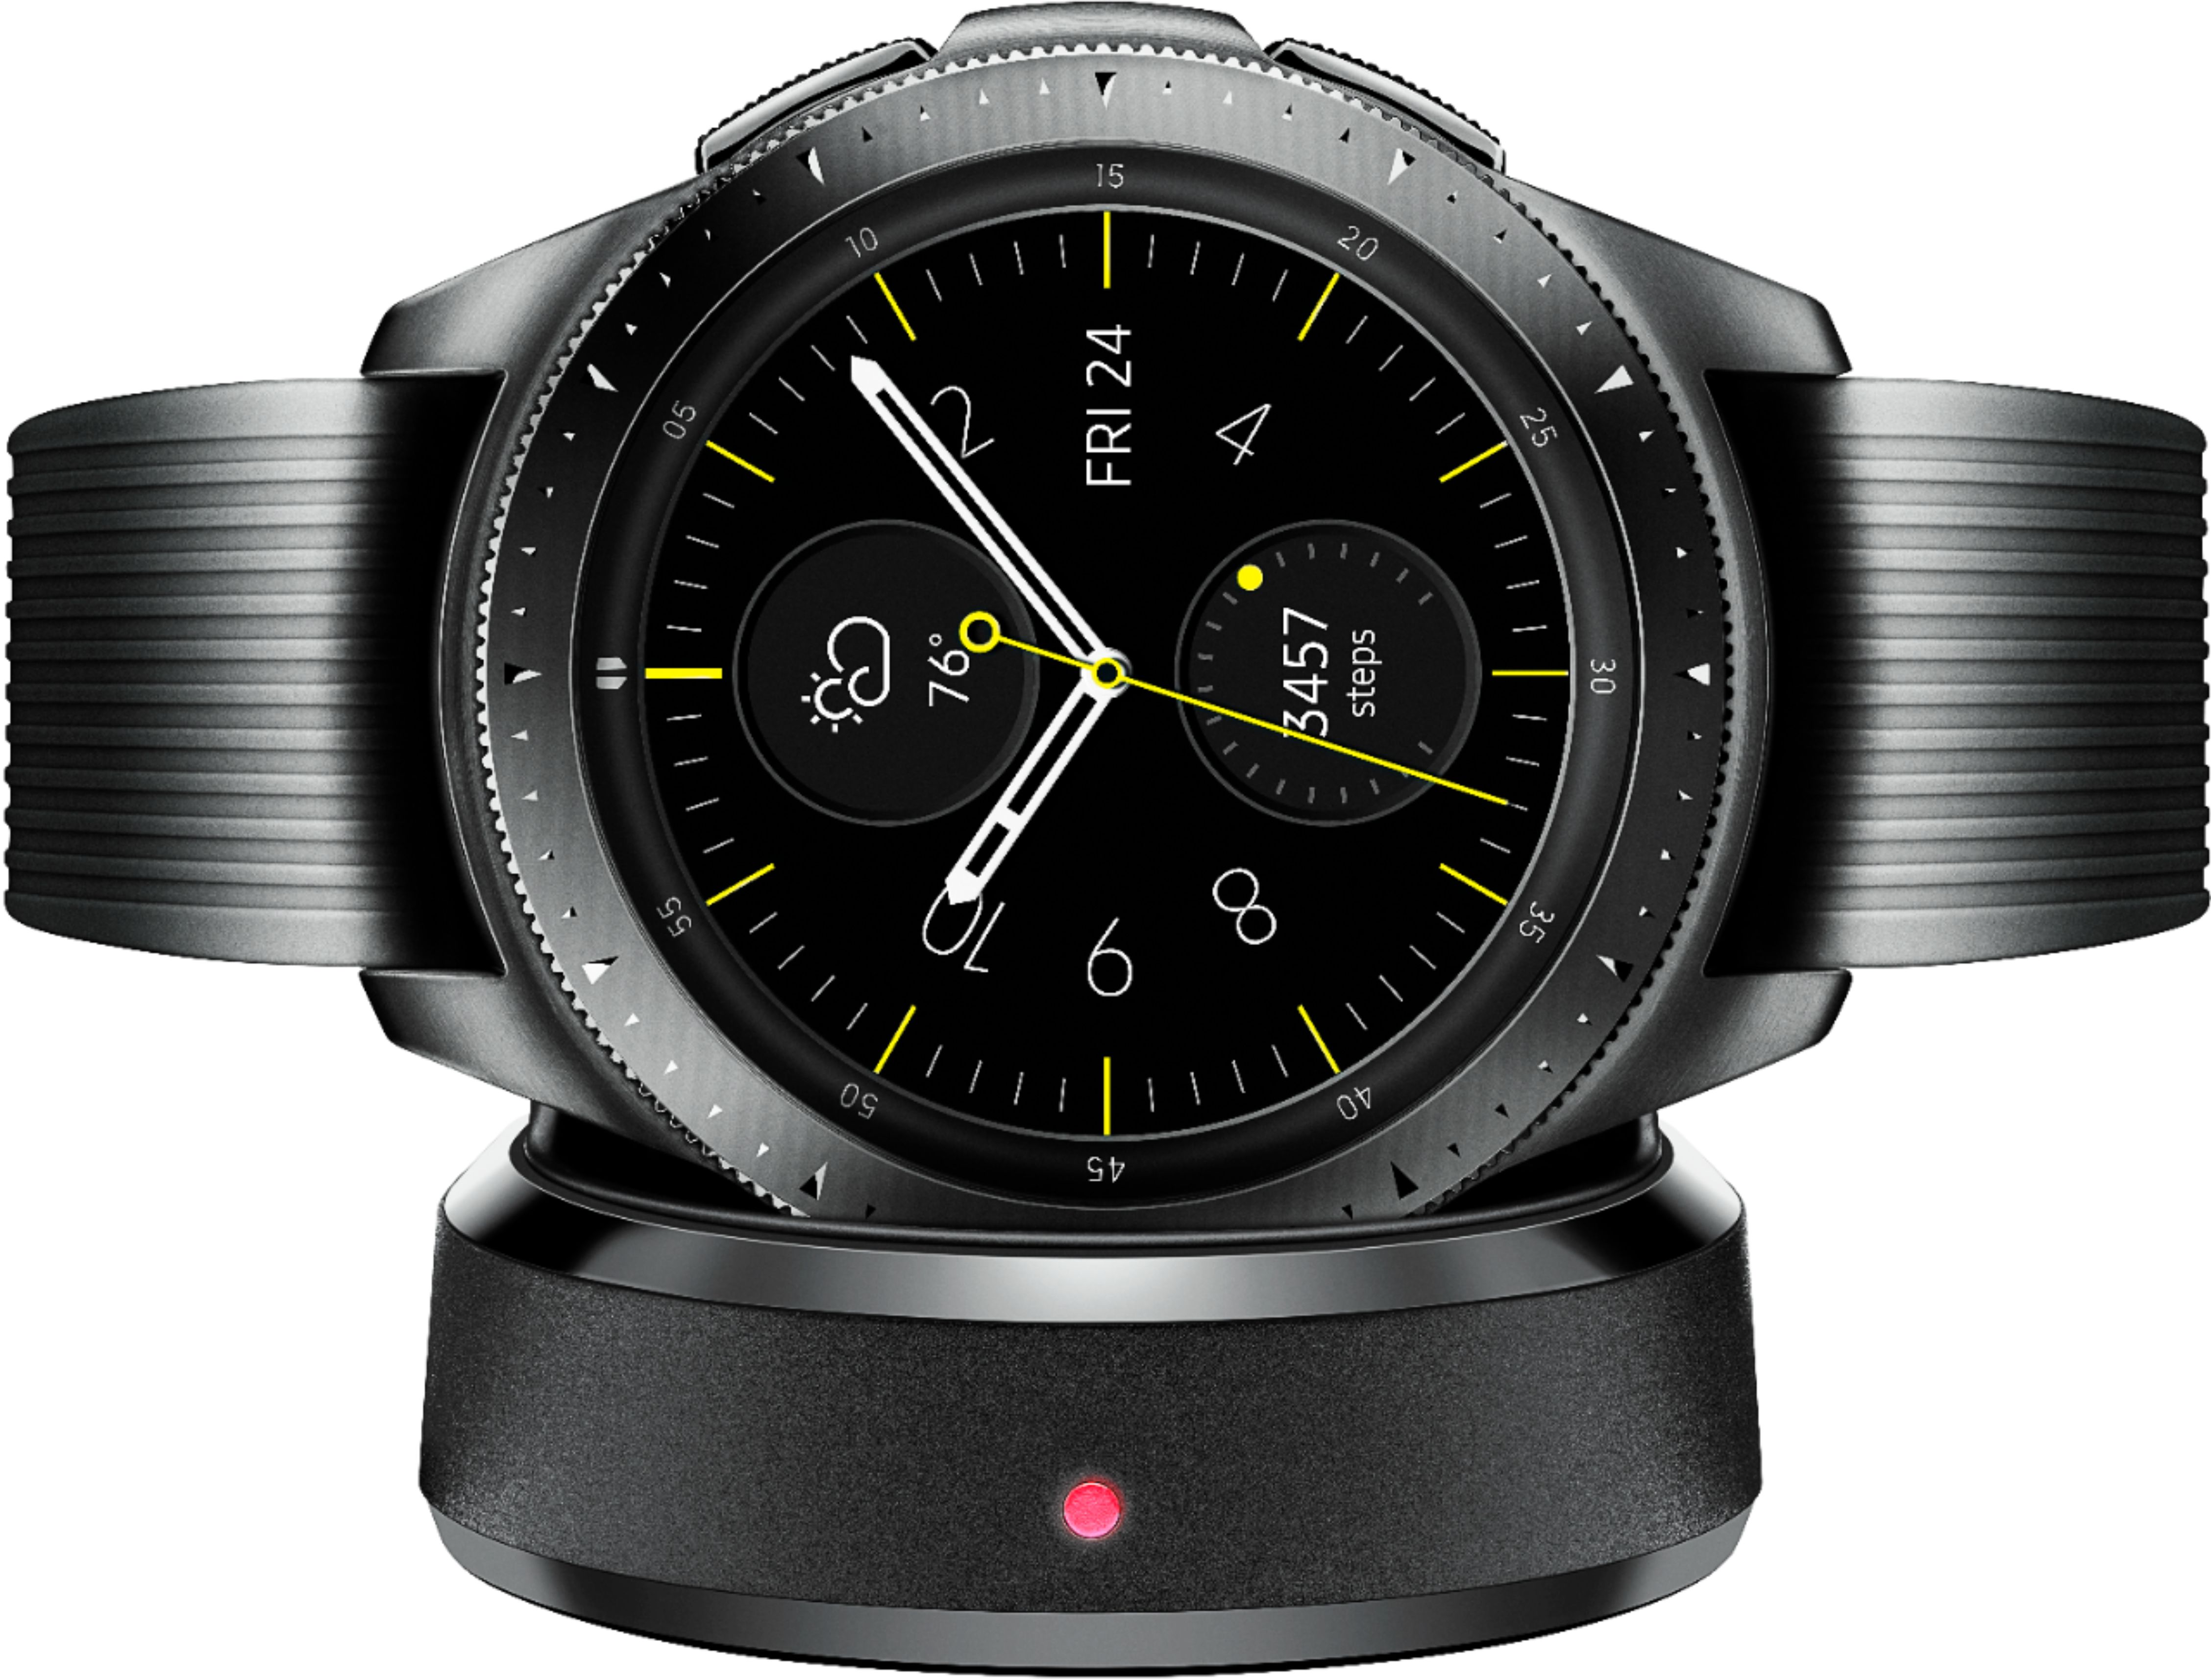 Best Buy Samsung Galaxy Watch Smartwatch 42mm Stainless Steel LTE